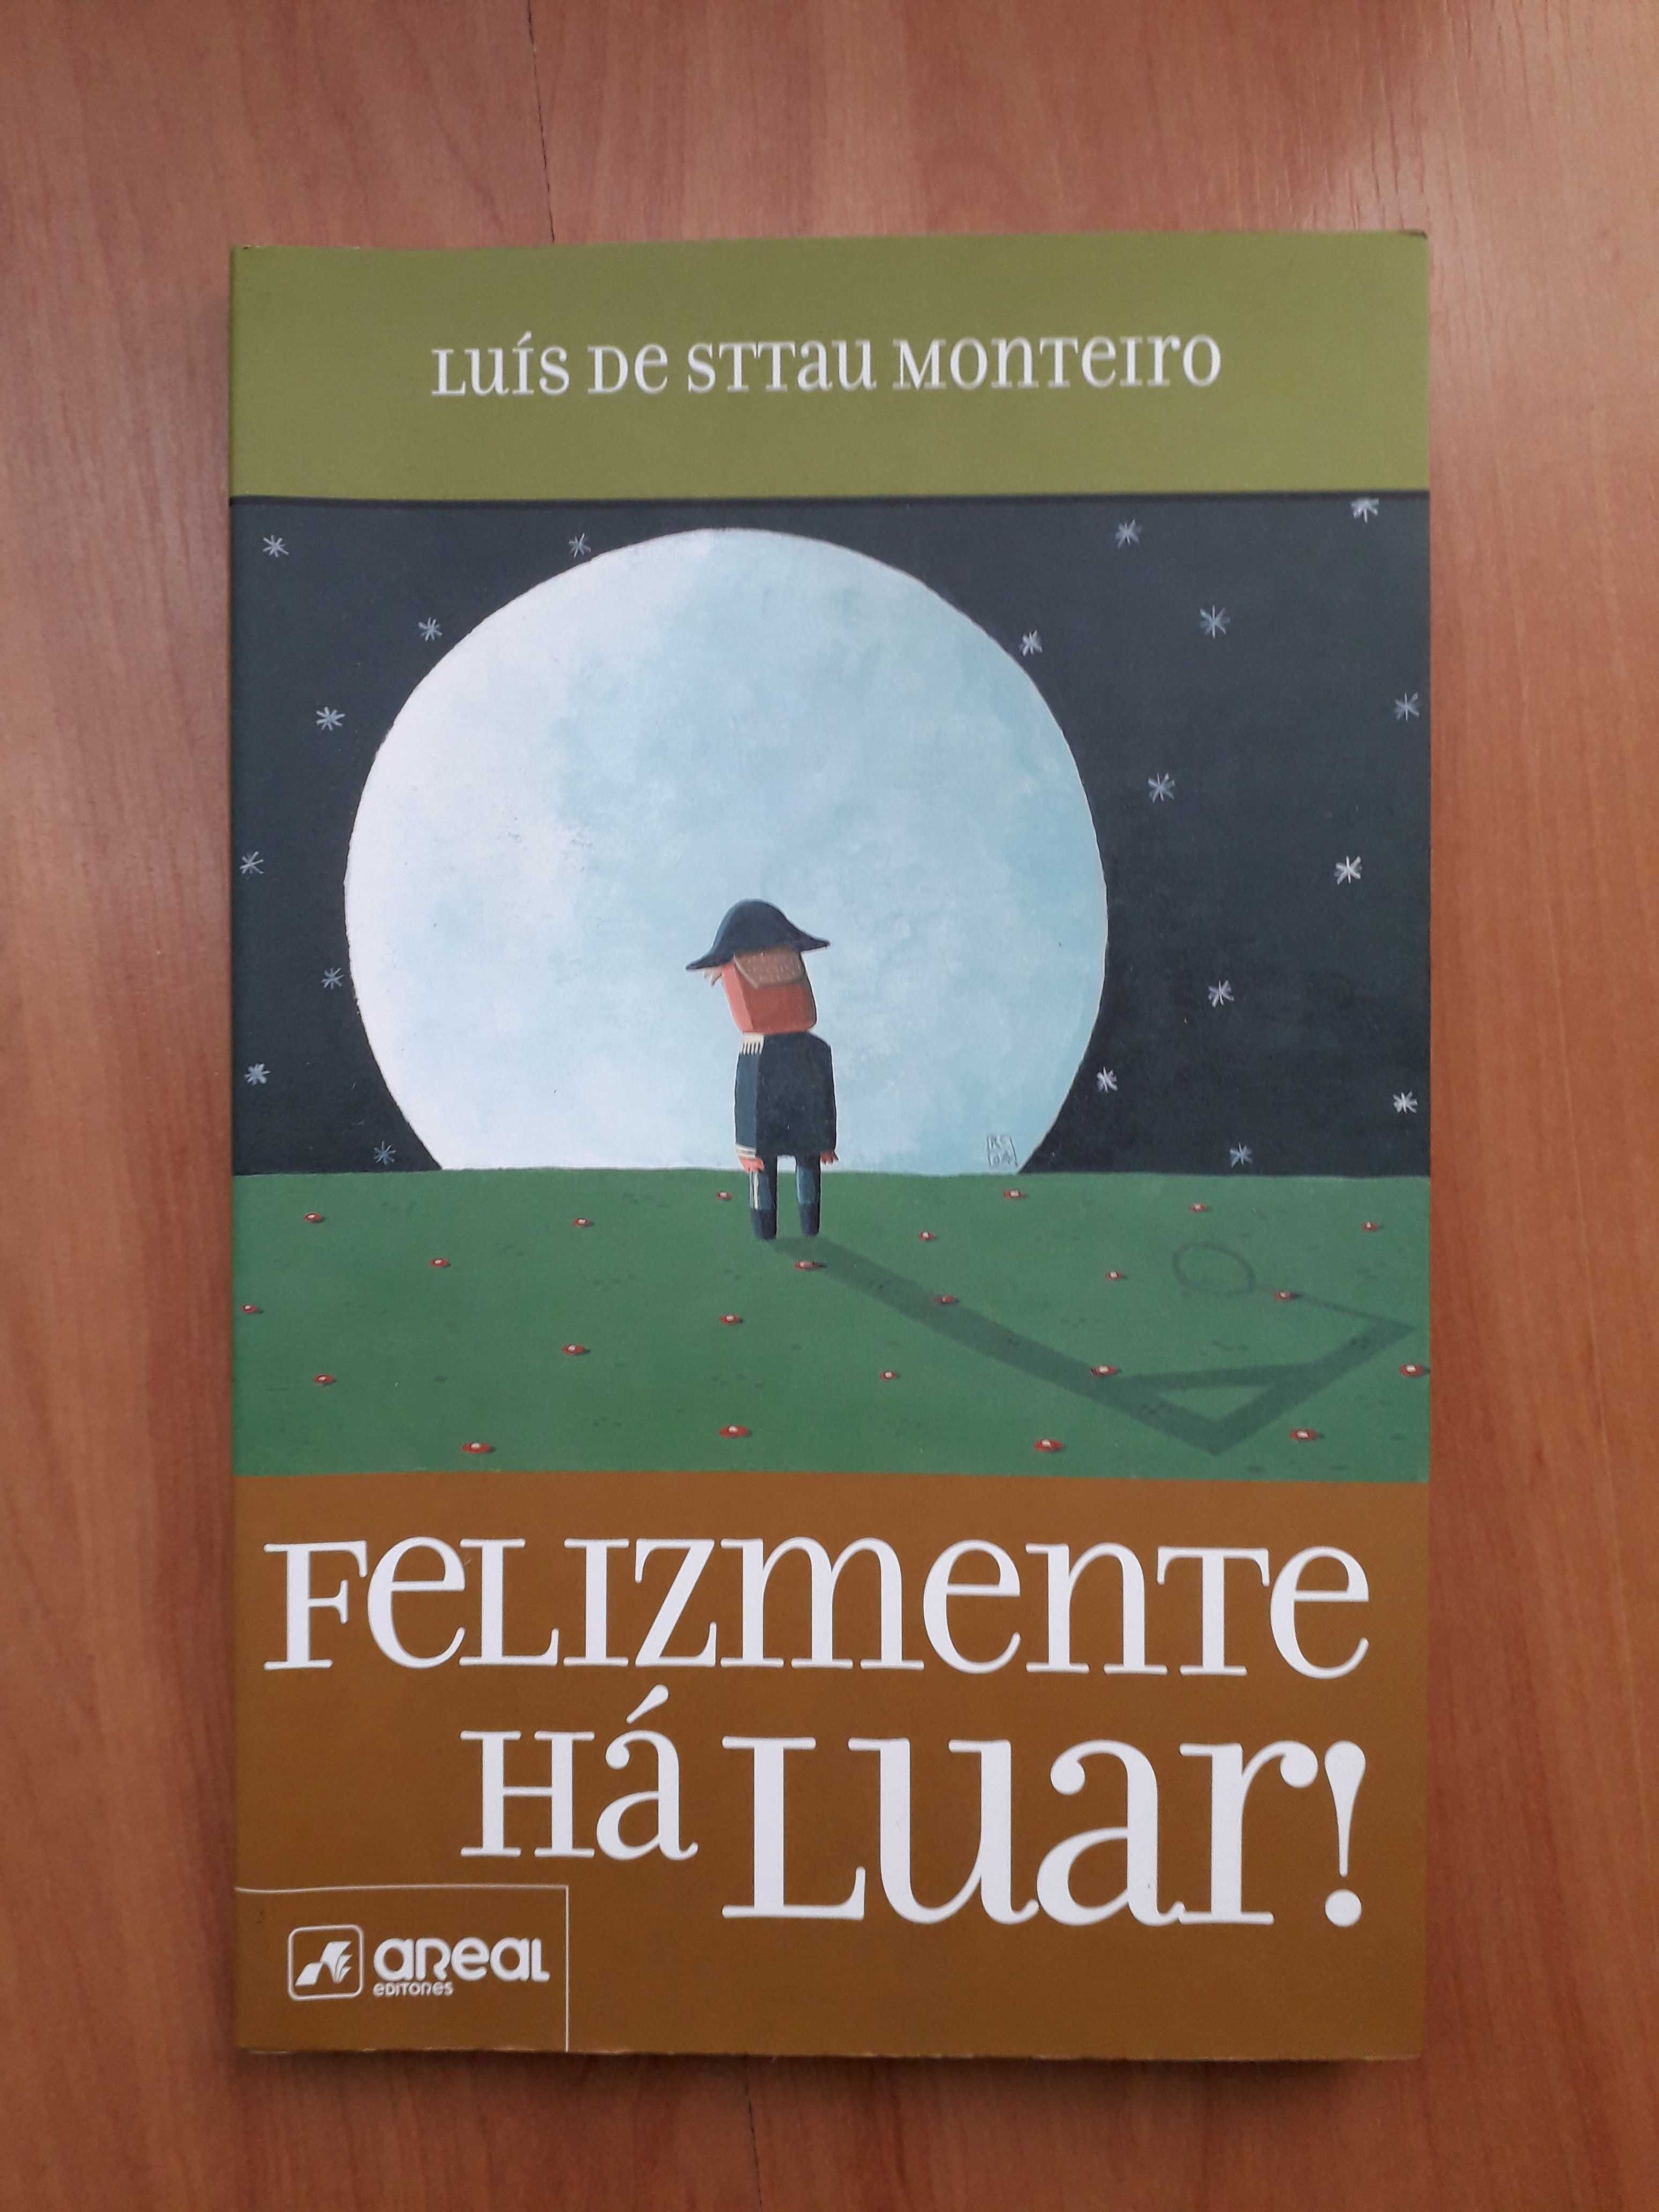 LIVRO Felizmente há Luar! de Luís de Sttau Monteiro (portes inc.)